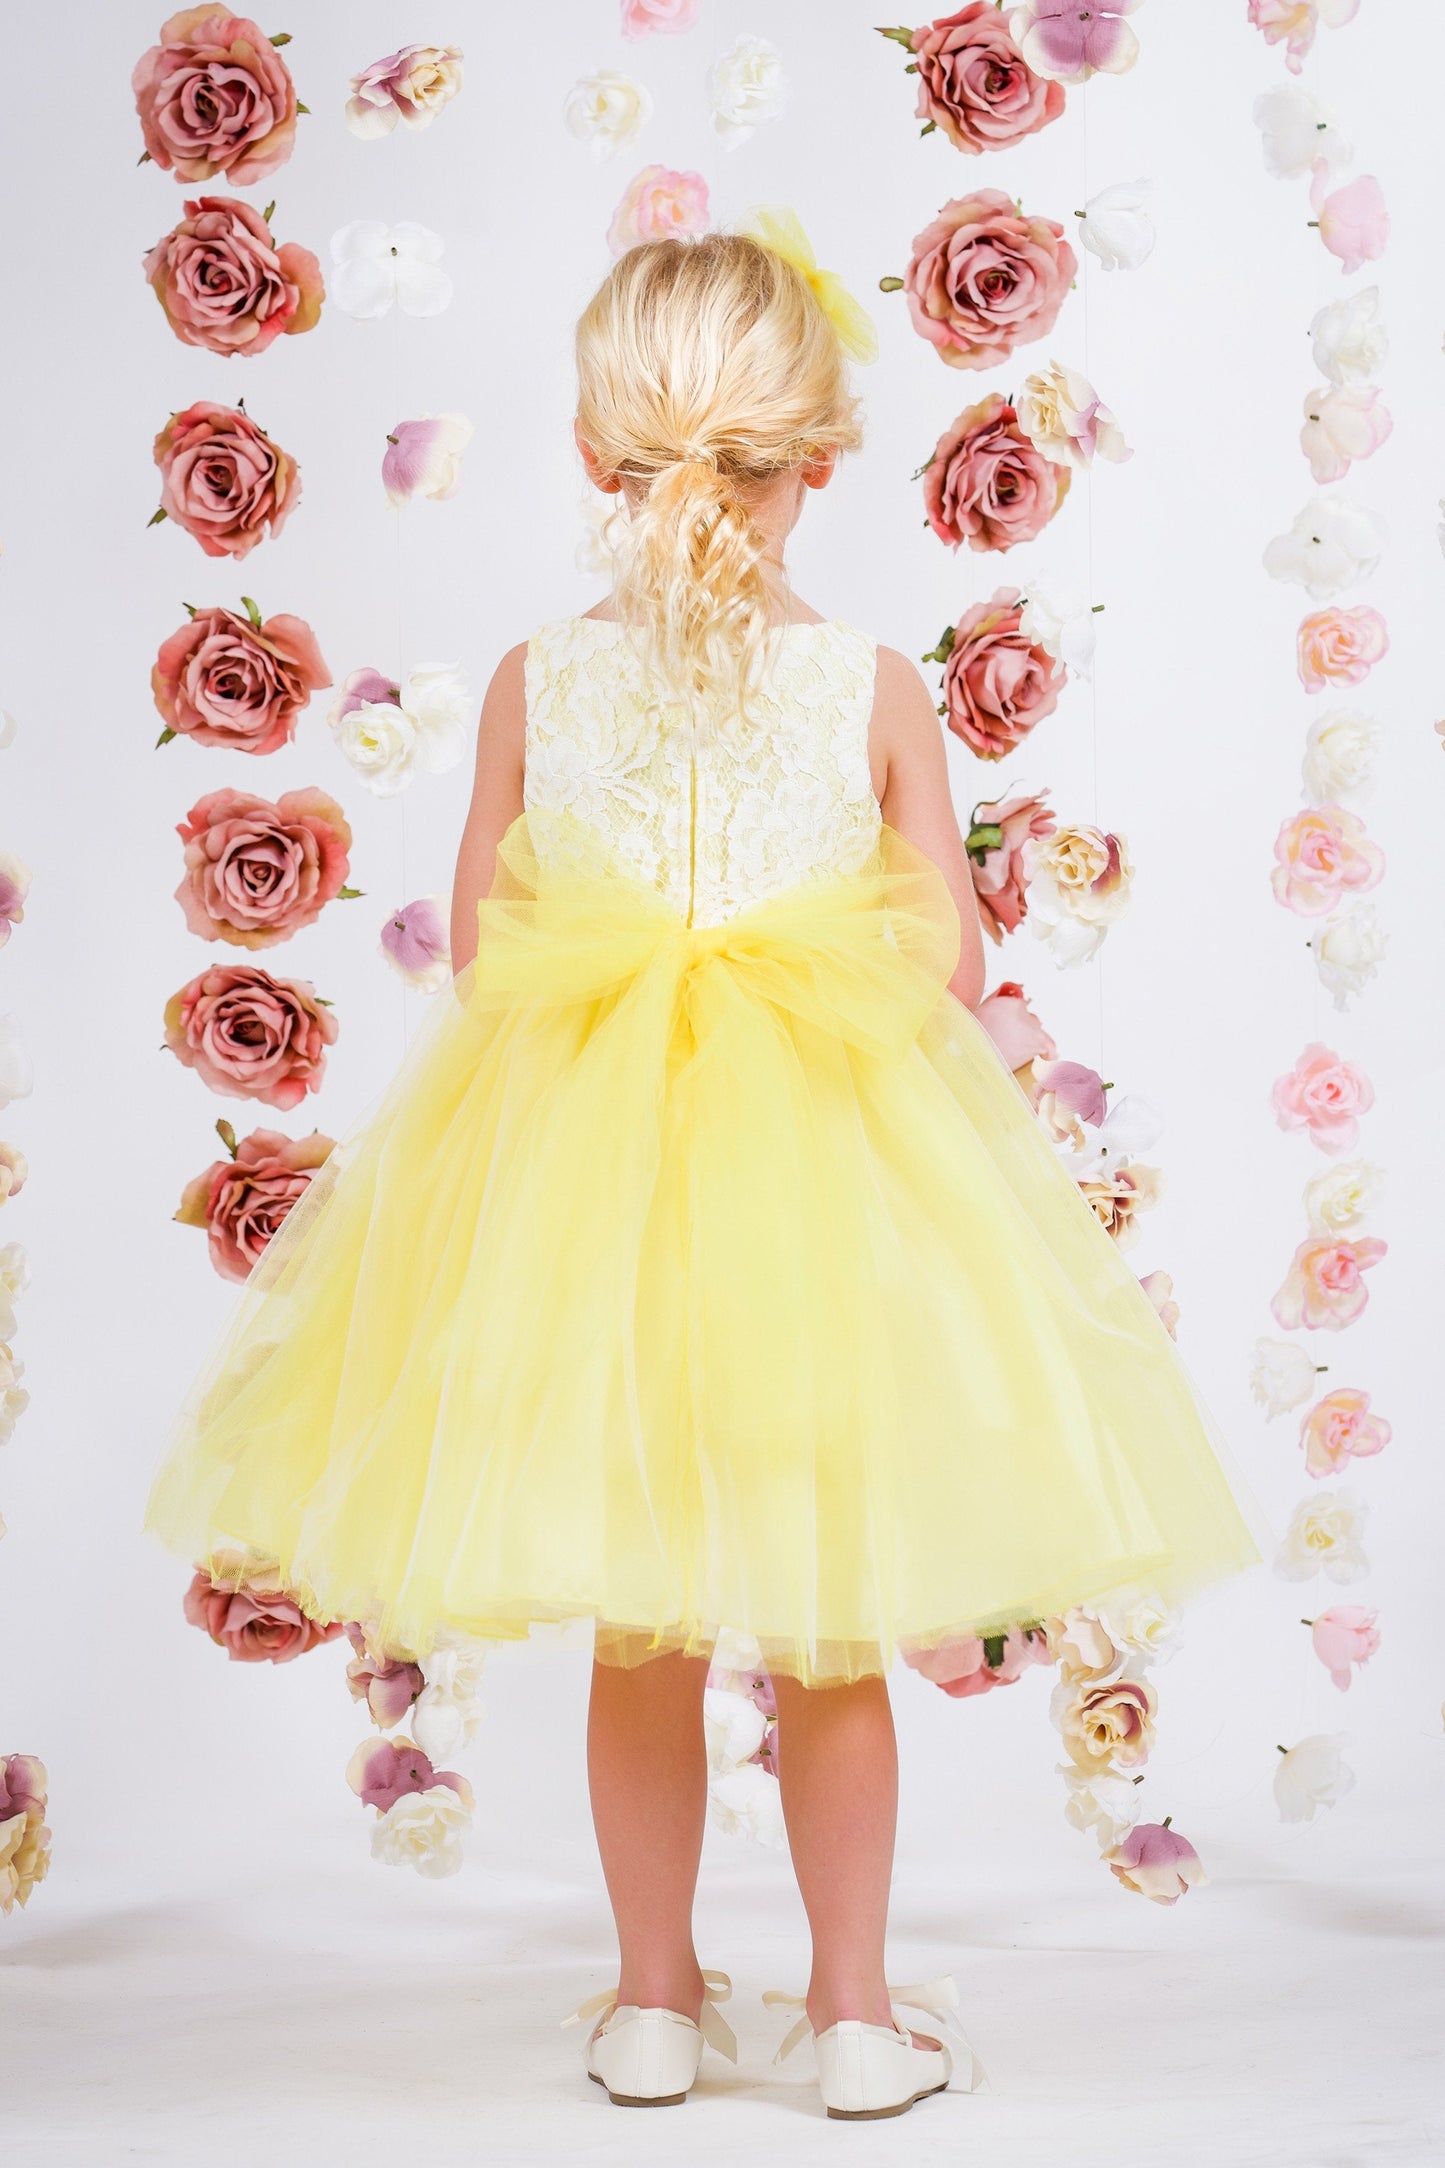 Dress - Lace Illusion Dress